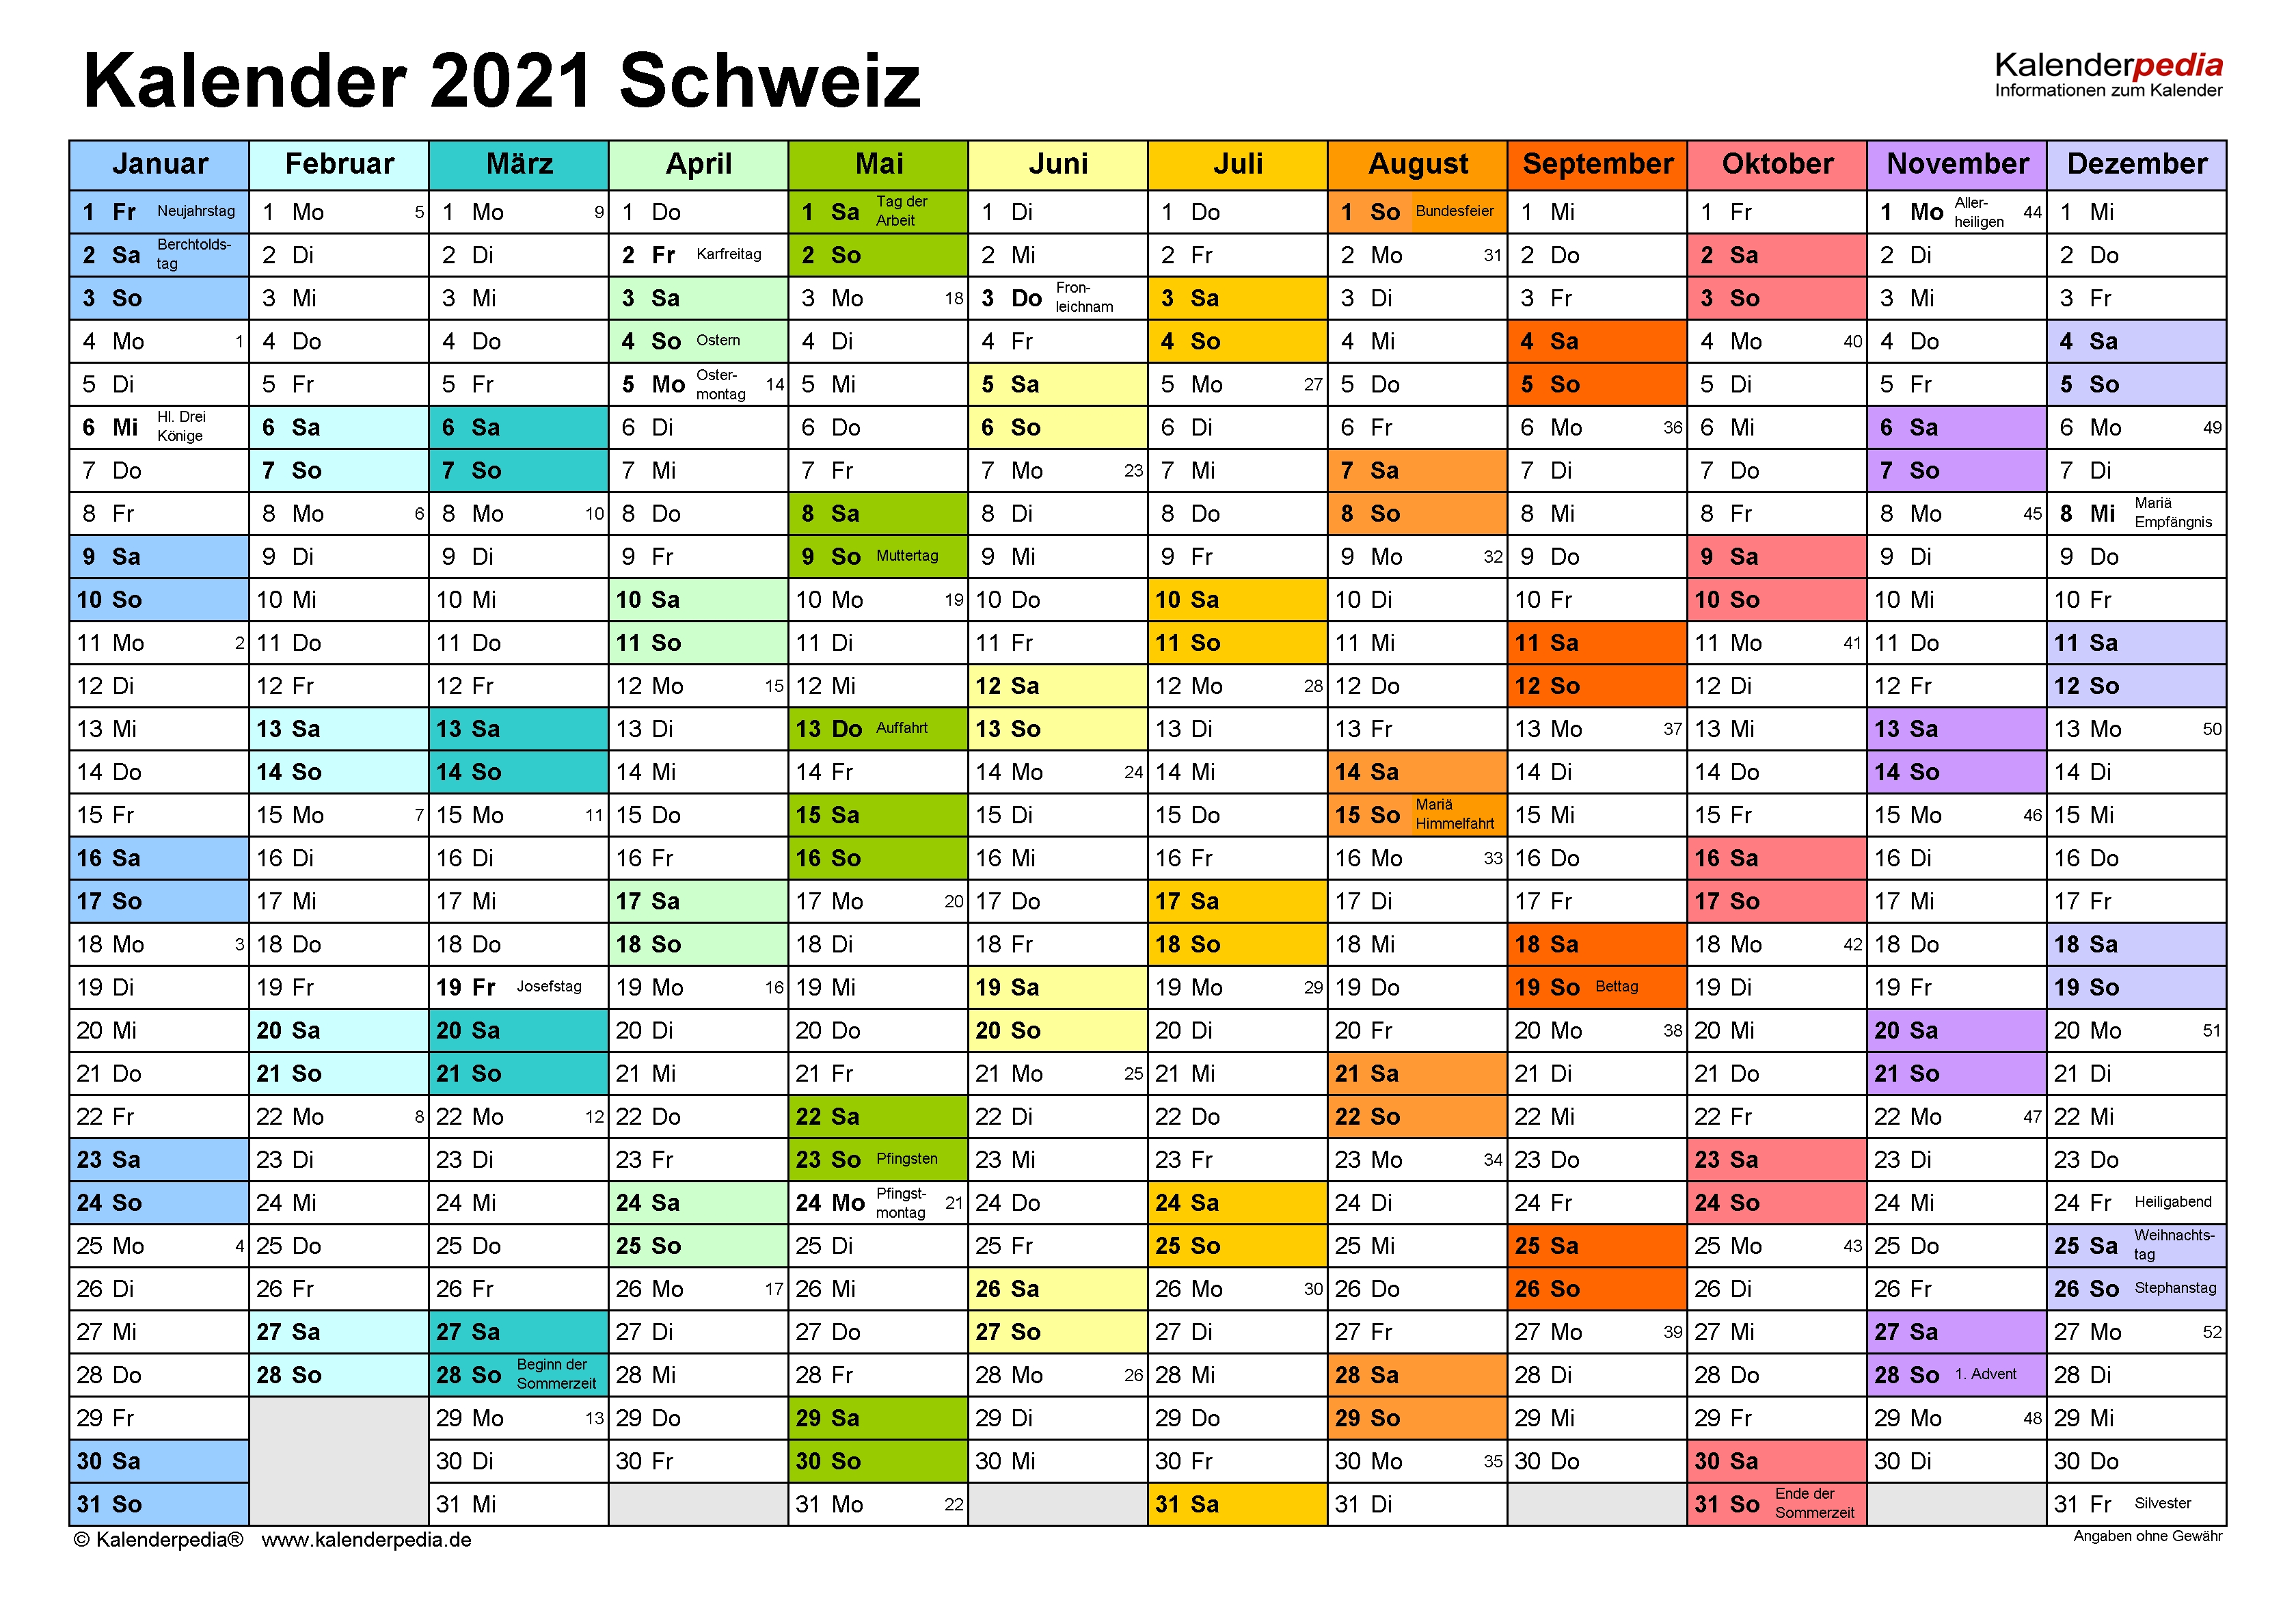 Kalender 2021 Schweiz Zum Ausdrucken Als Pdf  Kalender 2021 Zum Ausdrucken Kostenlos